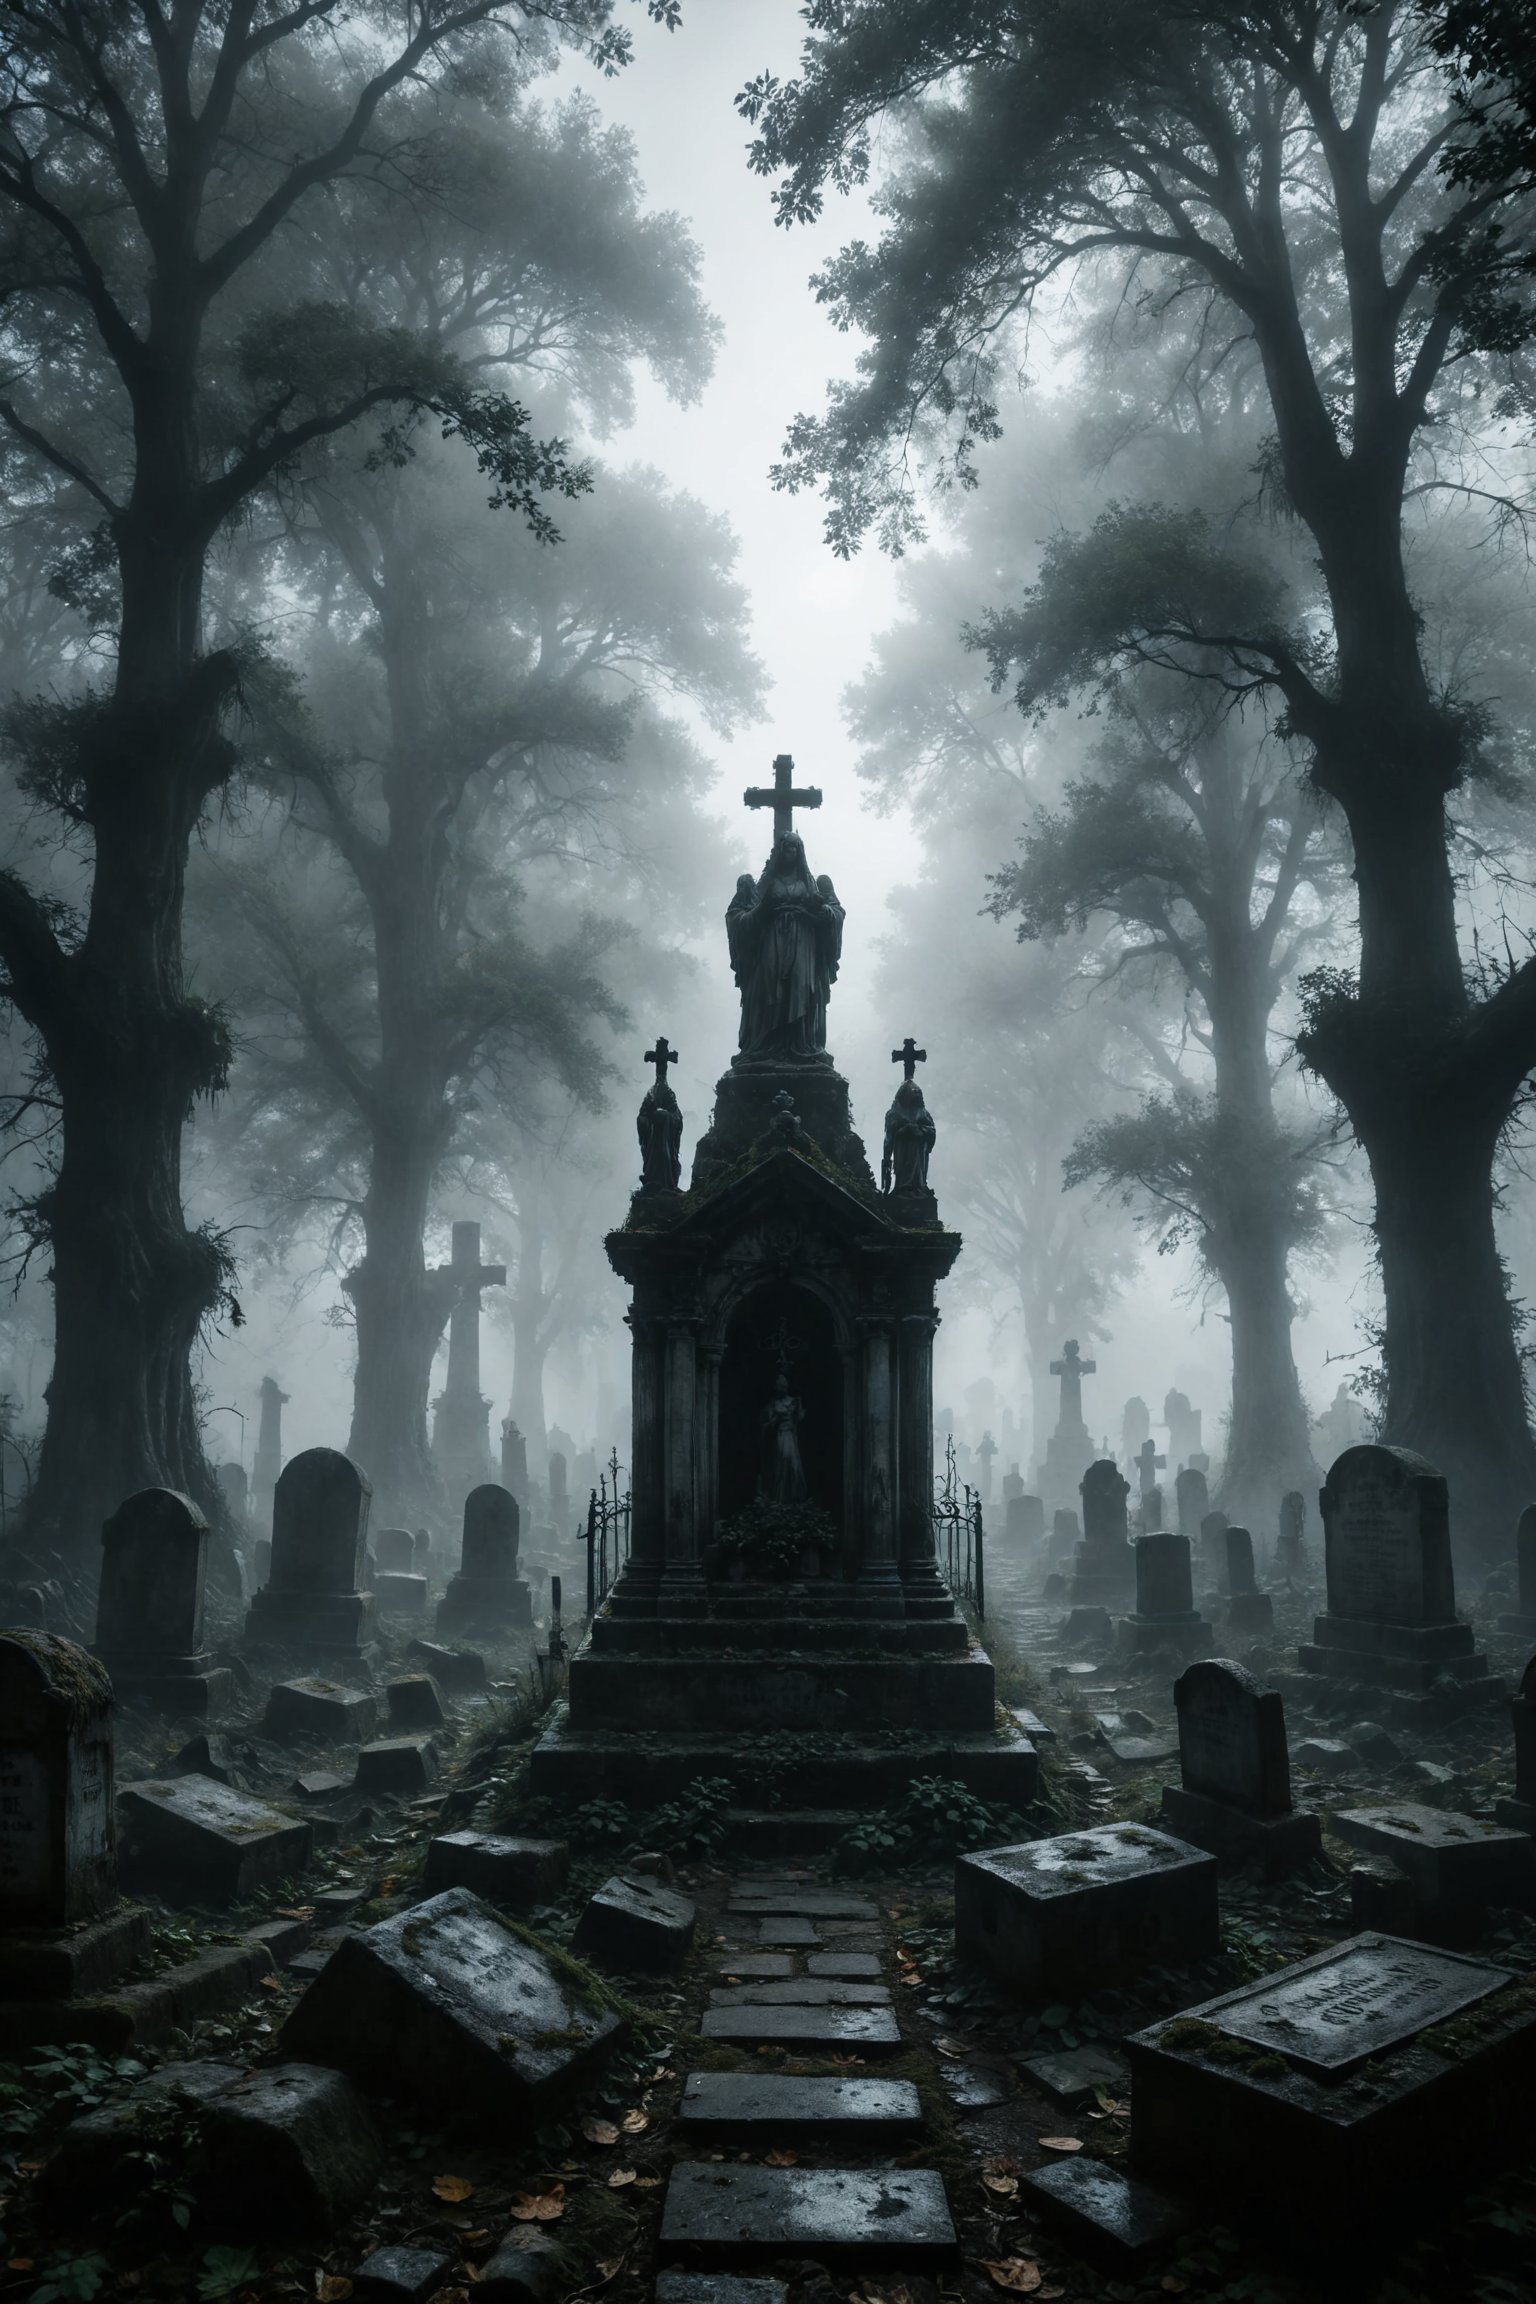 mitica y misteriosa escena gotica de Un cementerio envuelto en niebla donde las lápidas parecen susurrar historias de almas perdidas y buscadoras de paz.